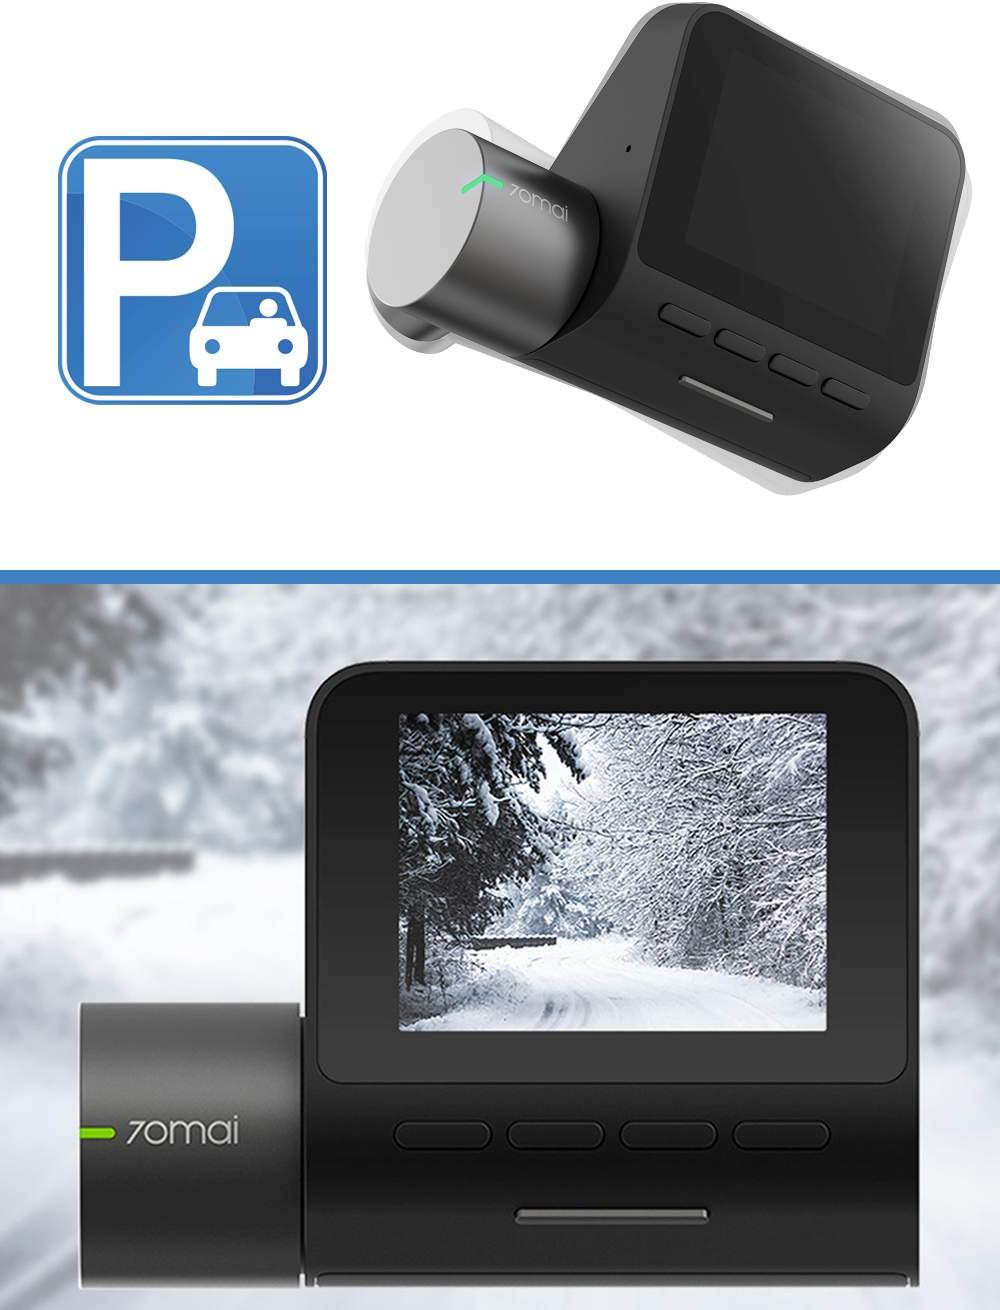 tryb parkingowy Wydajny procesor HiSilicon Hi3556V100 Możliwa opcja dokupienia modułu GPS Duży i czytelny ekran LCD Łatwa i szybka instalacja Rejestrator 70mai Dash Camera cechuje się szerokim kątem